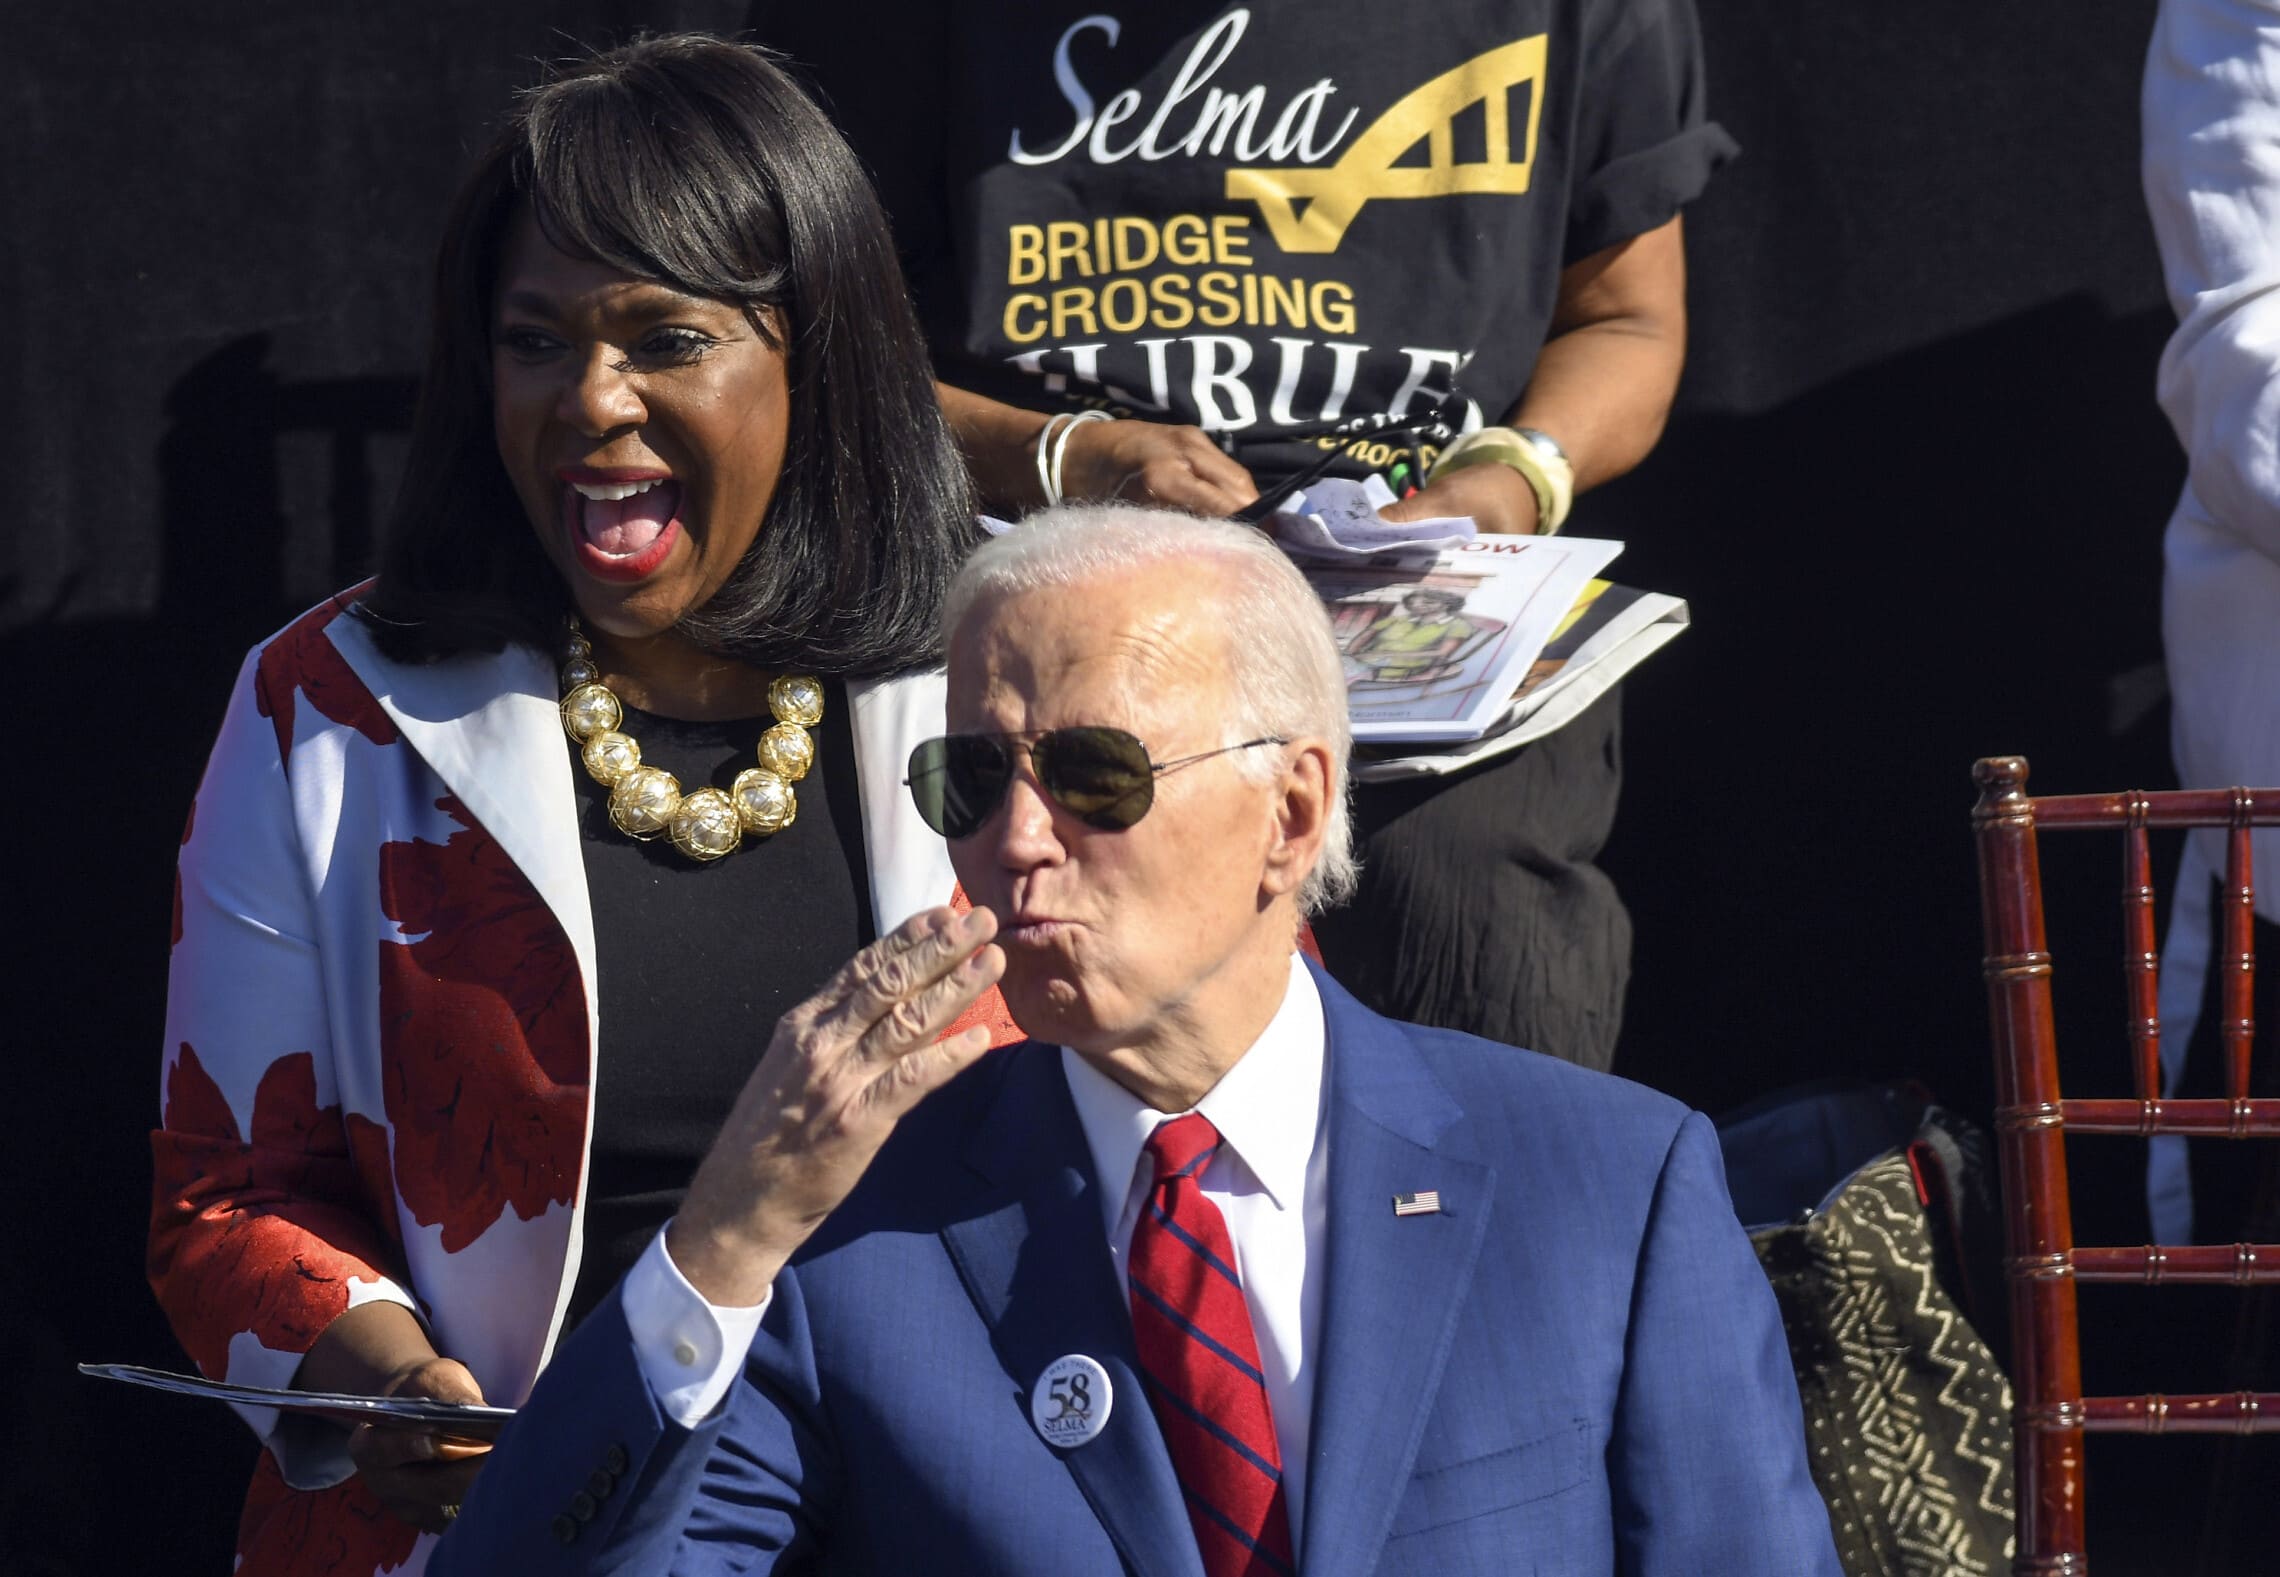 נשיא ארה"ב ג'ו ביידן מפריח נשיקות באוויר באירוע של התנועה לזכויות האזרח באלבמה, 5 במרץ. 2023 (צילום: AP Photo/Julie Bennett)